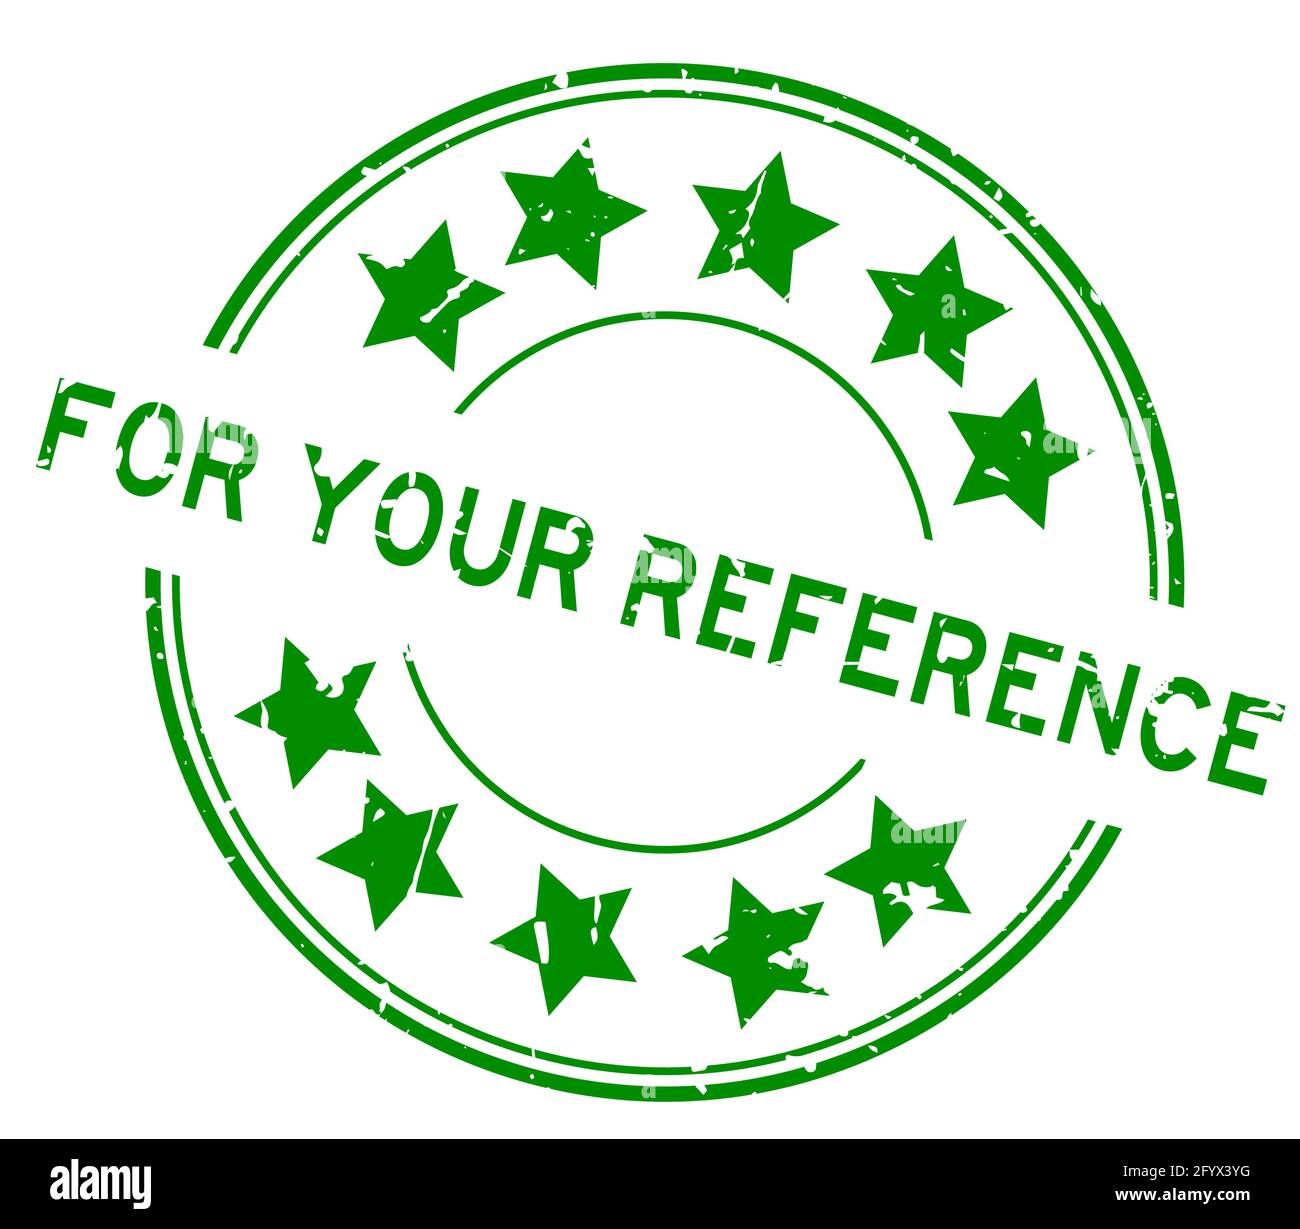 Grunge vert pour votre mot de référence avec l'icône étoile ronde tampon d'étanchéité en caoutchouc sur fond blanc Illustration de Vecteur